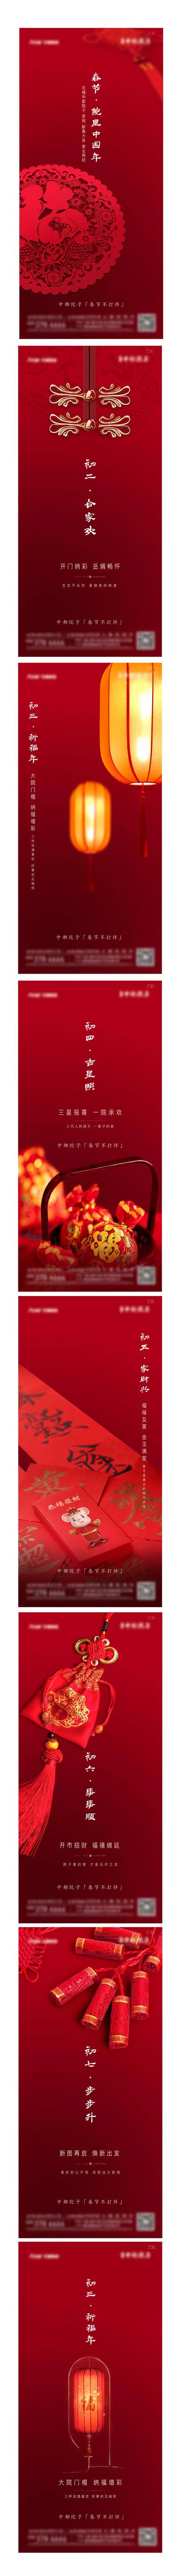 南门网 海报  地产  中国传统节日  春节 初一  初七   民俗  剪纸   红包  灯笼 